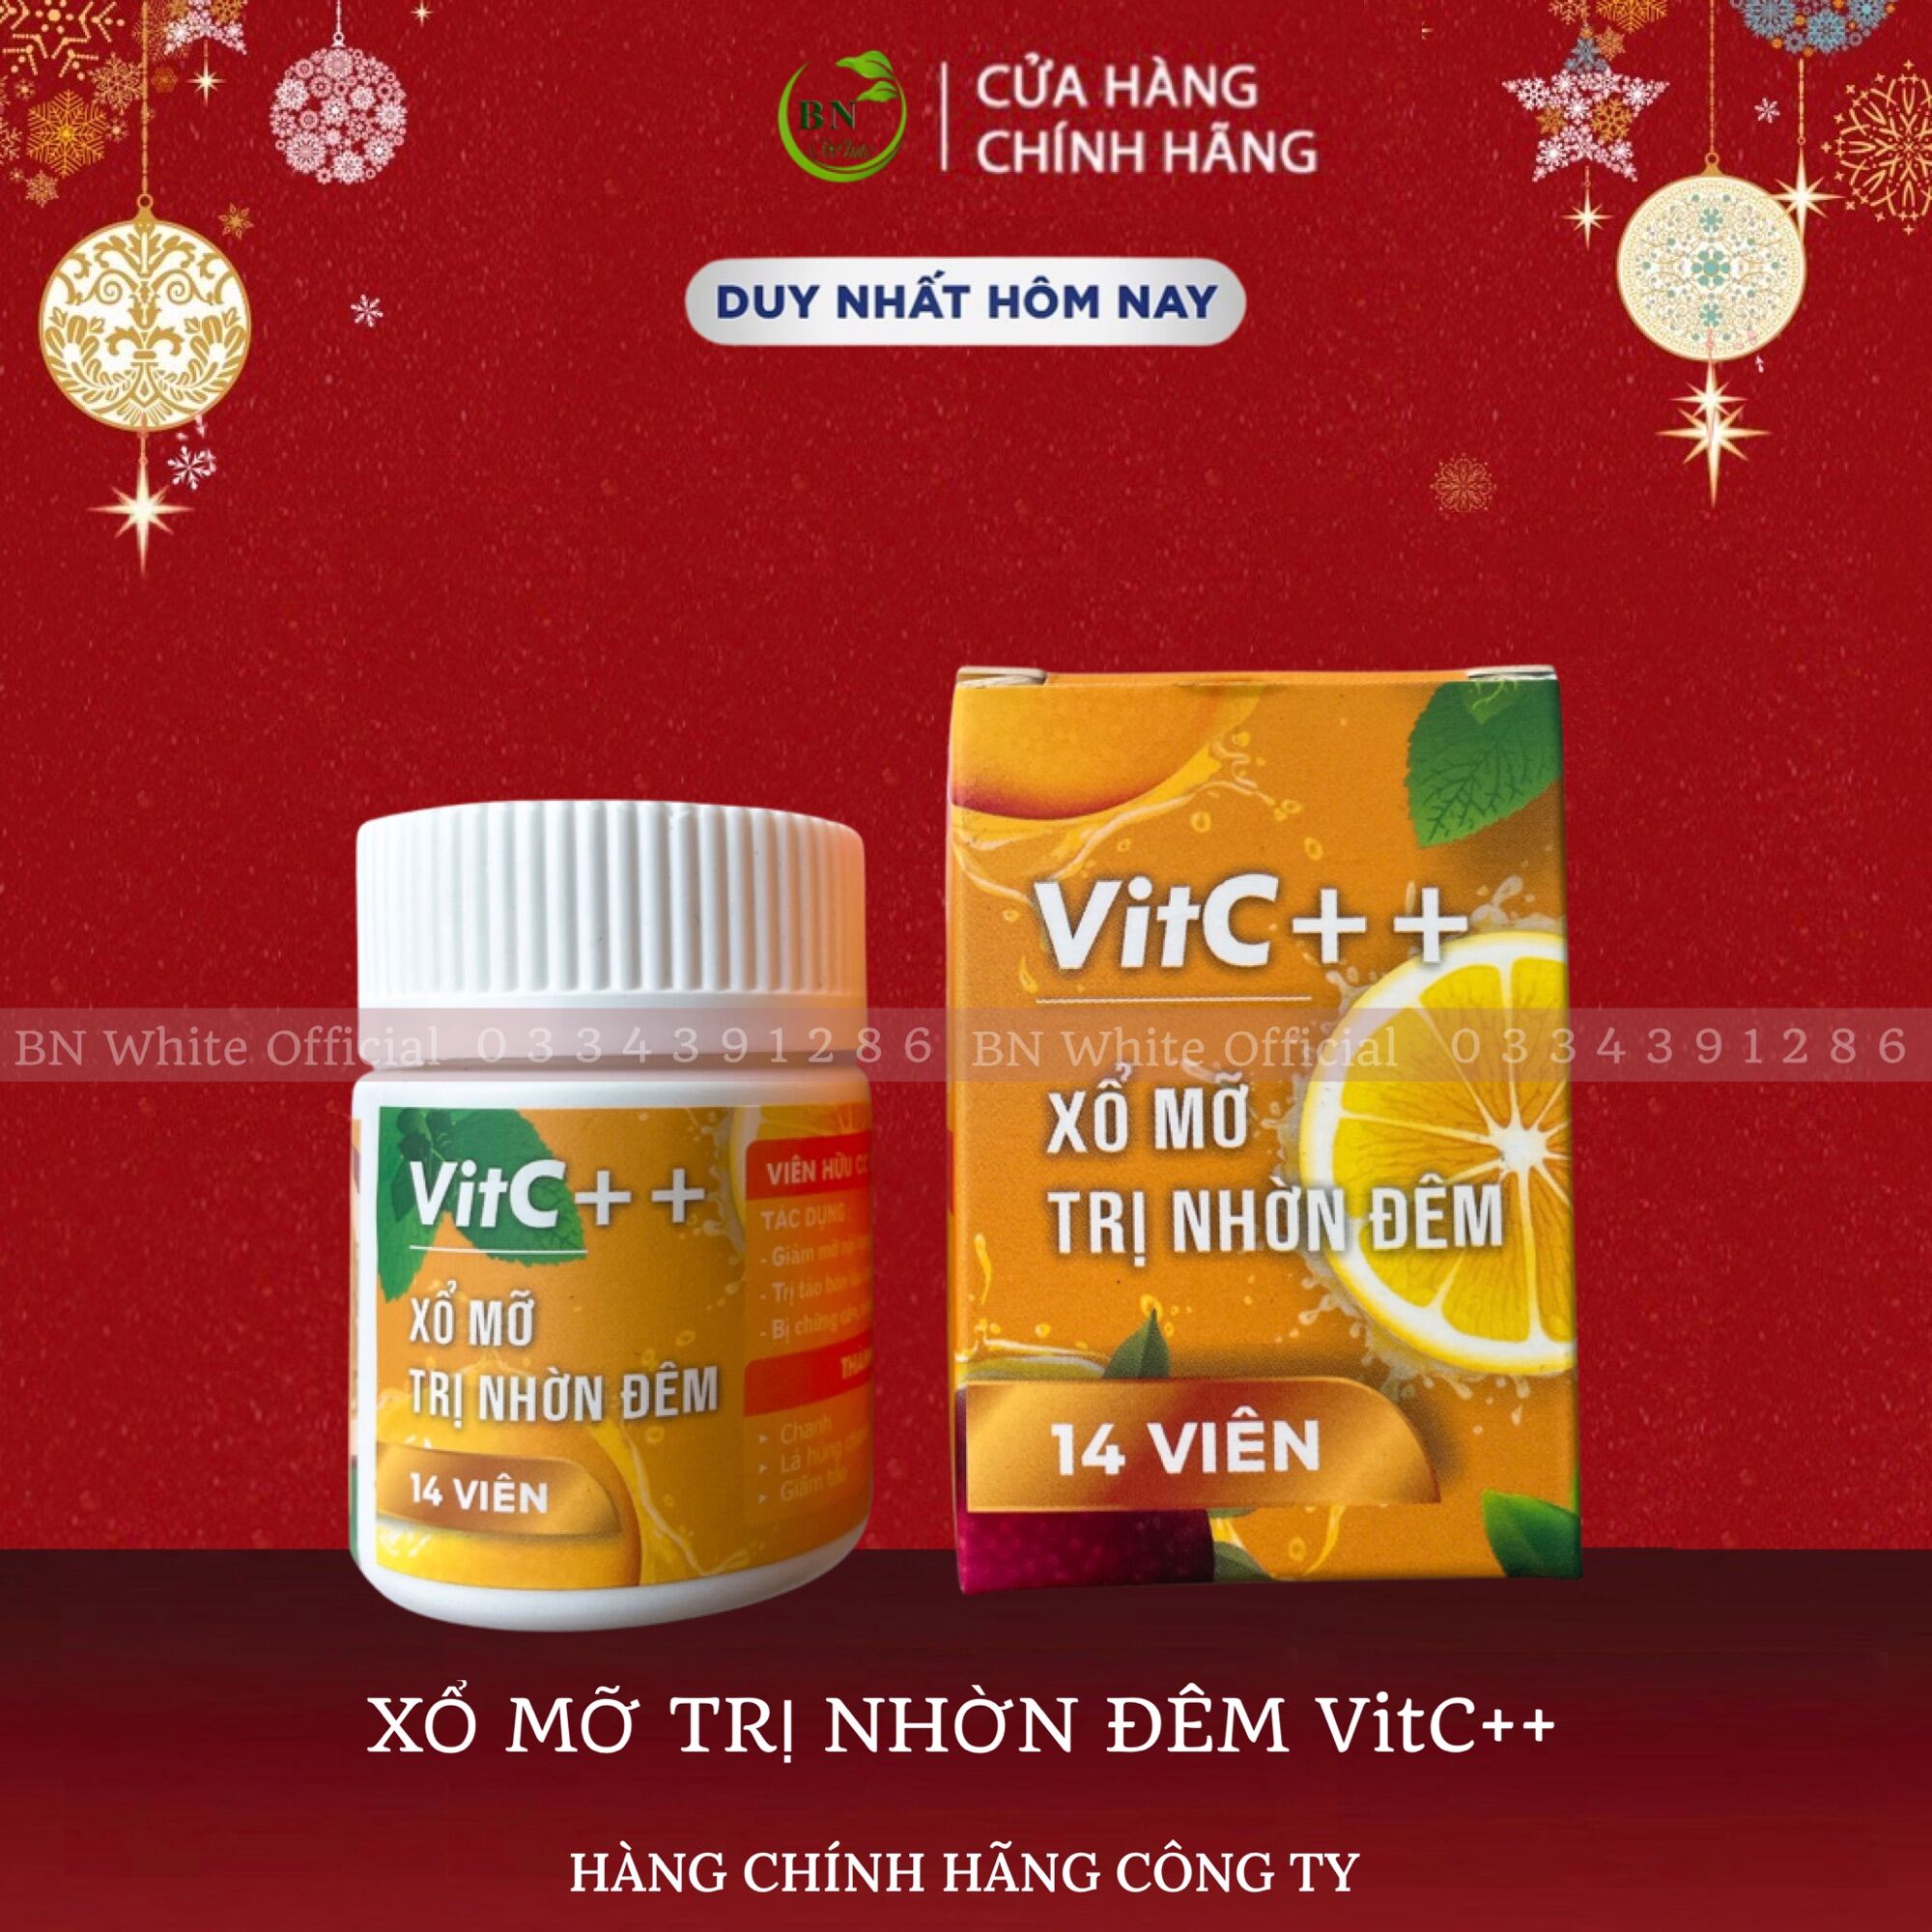 Xổ mỡ đêm VitC++ nhà kẹo dứa VIC hiệu quả với cơ địa lờn, khó giảm